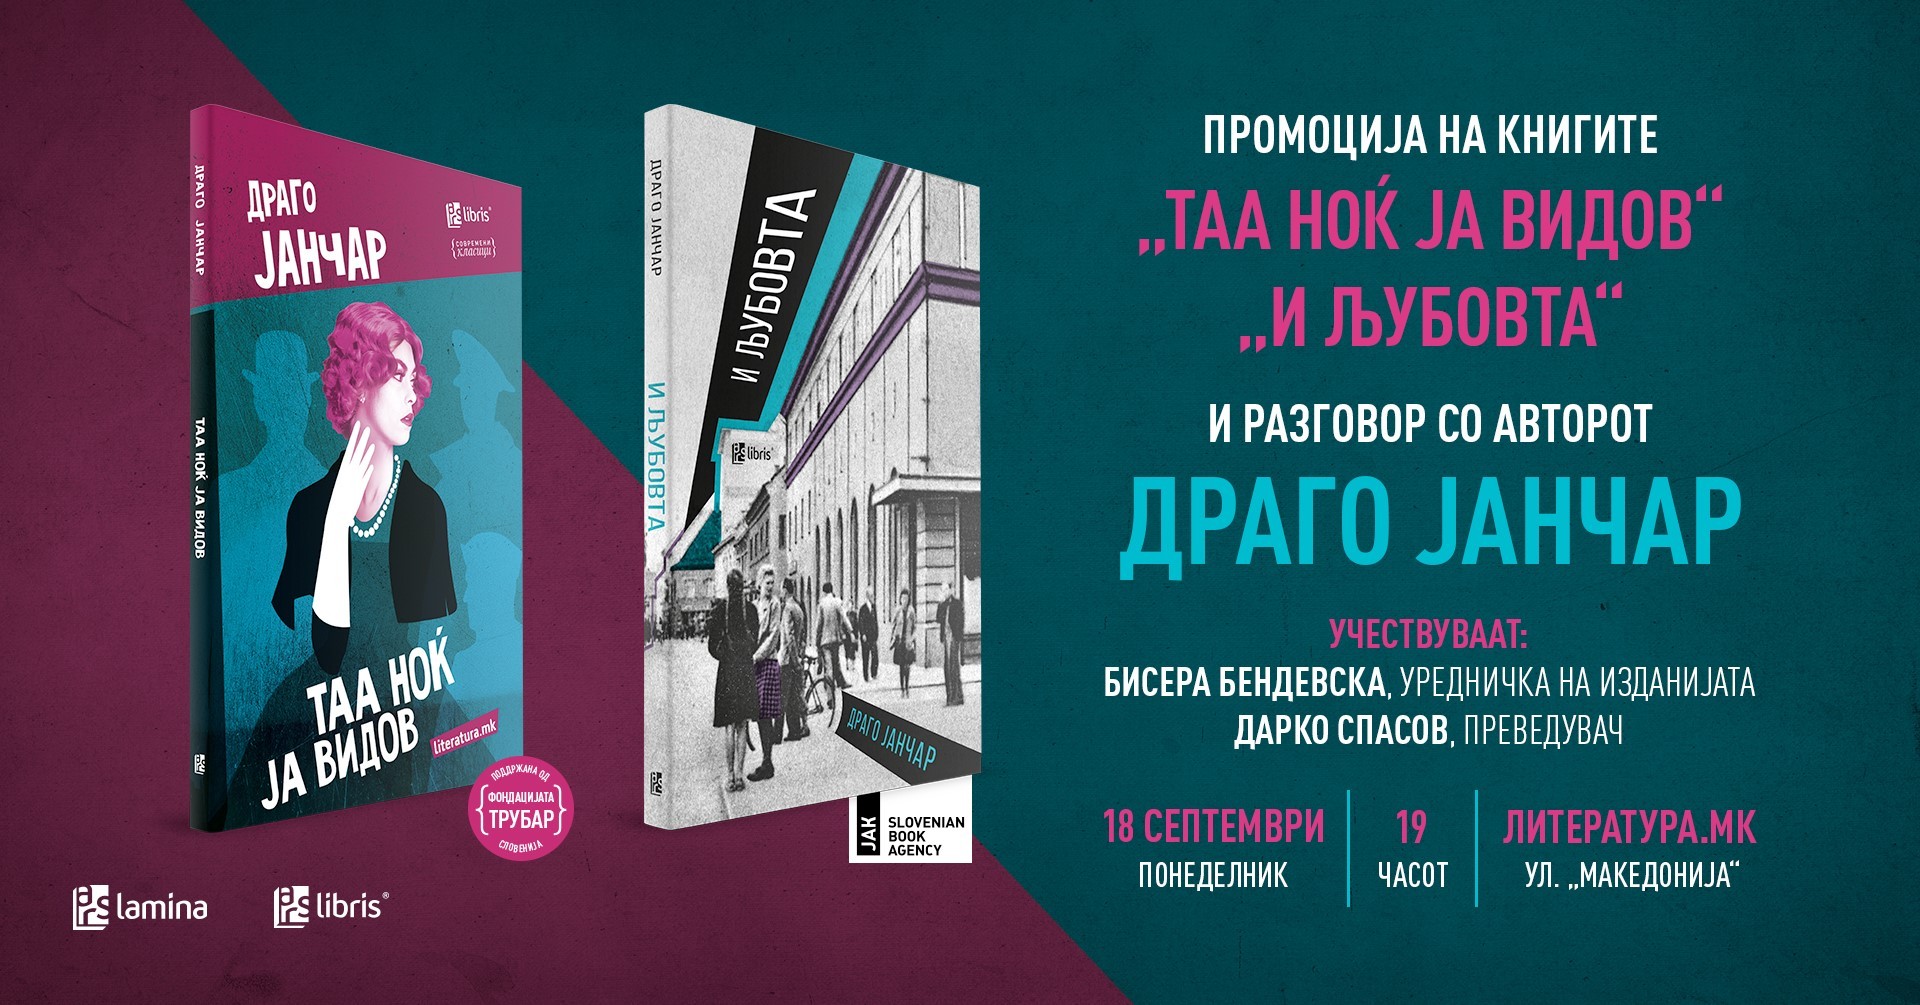 Промоција и разговор со писателот Драго Јанчар во „Литература.мк“ во Скопје